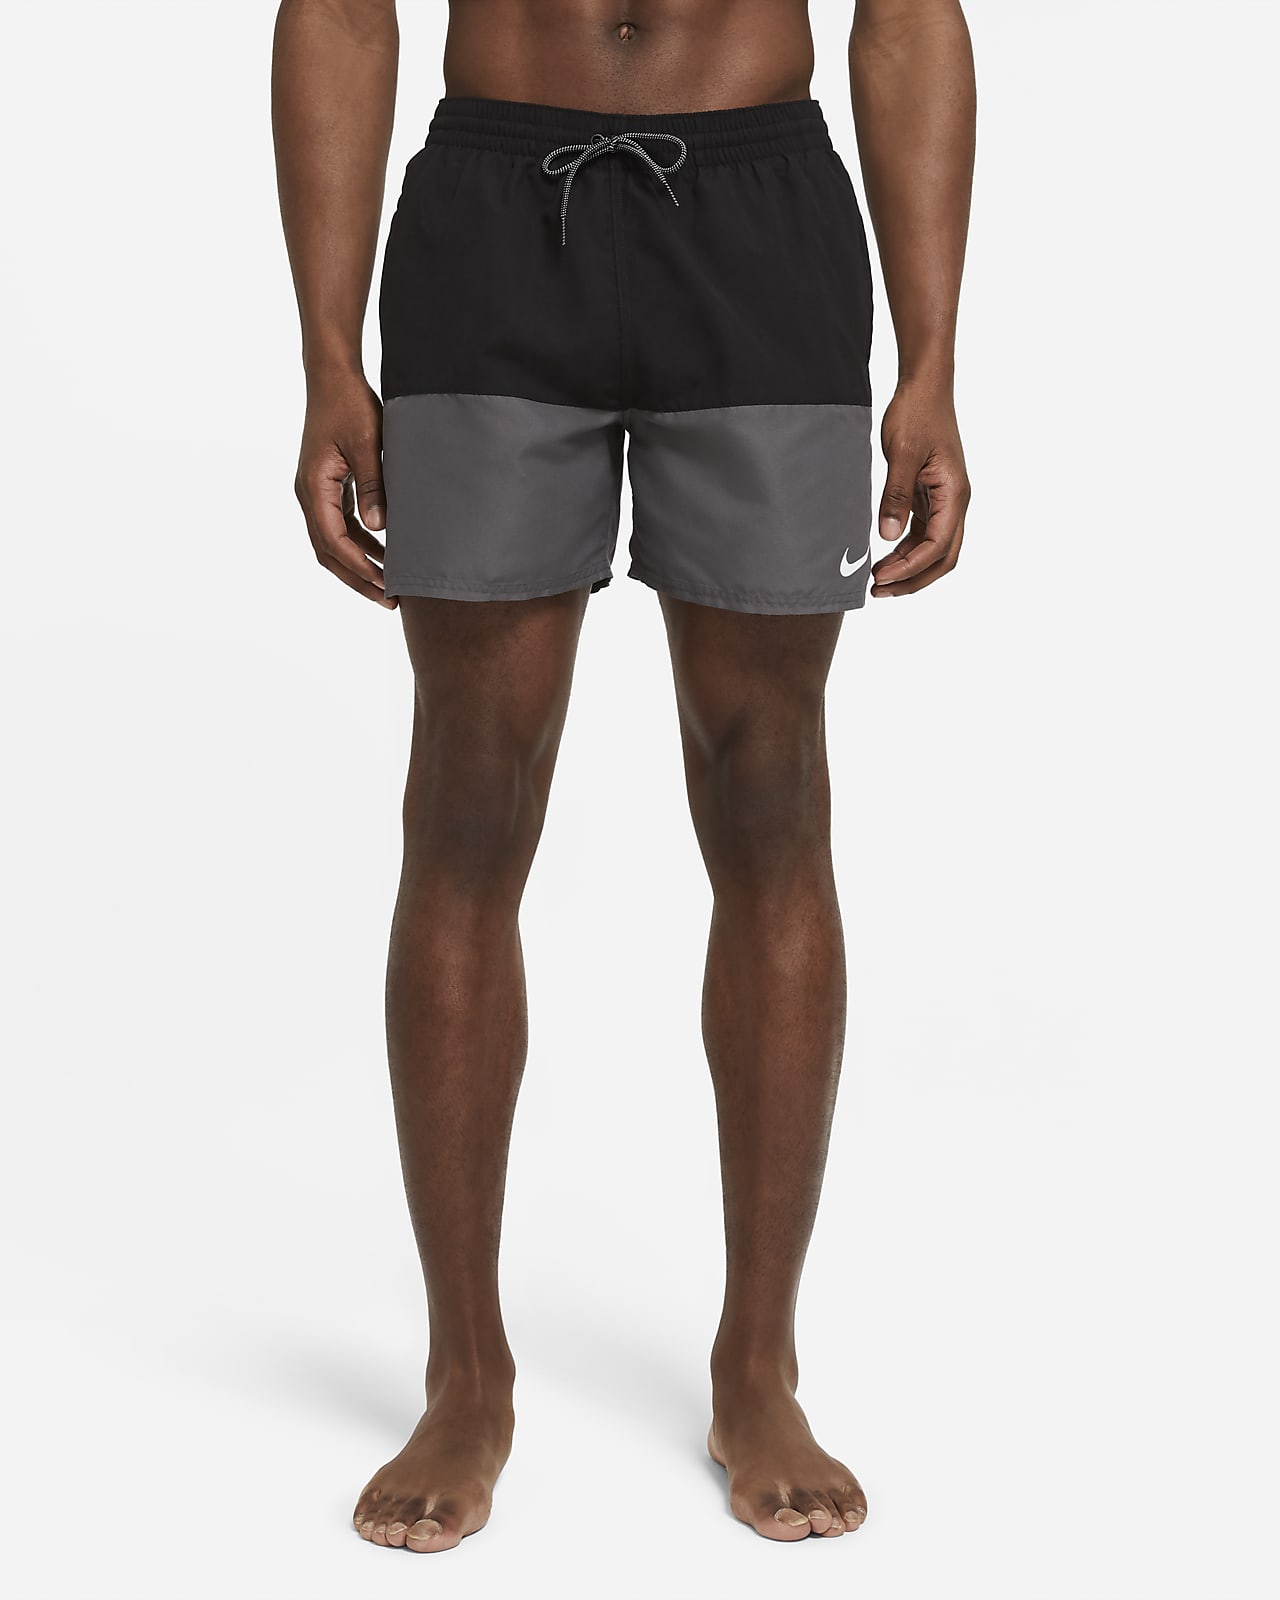 Espacioso oro Escribir Shorts de baño de 13 cm para hombre Nike Split. Nike.com